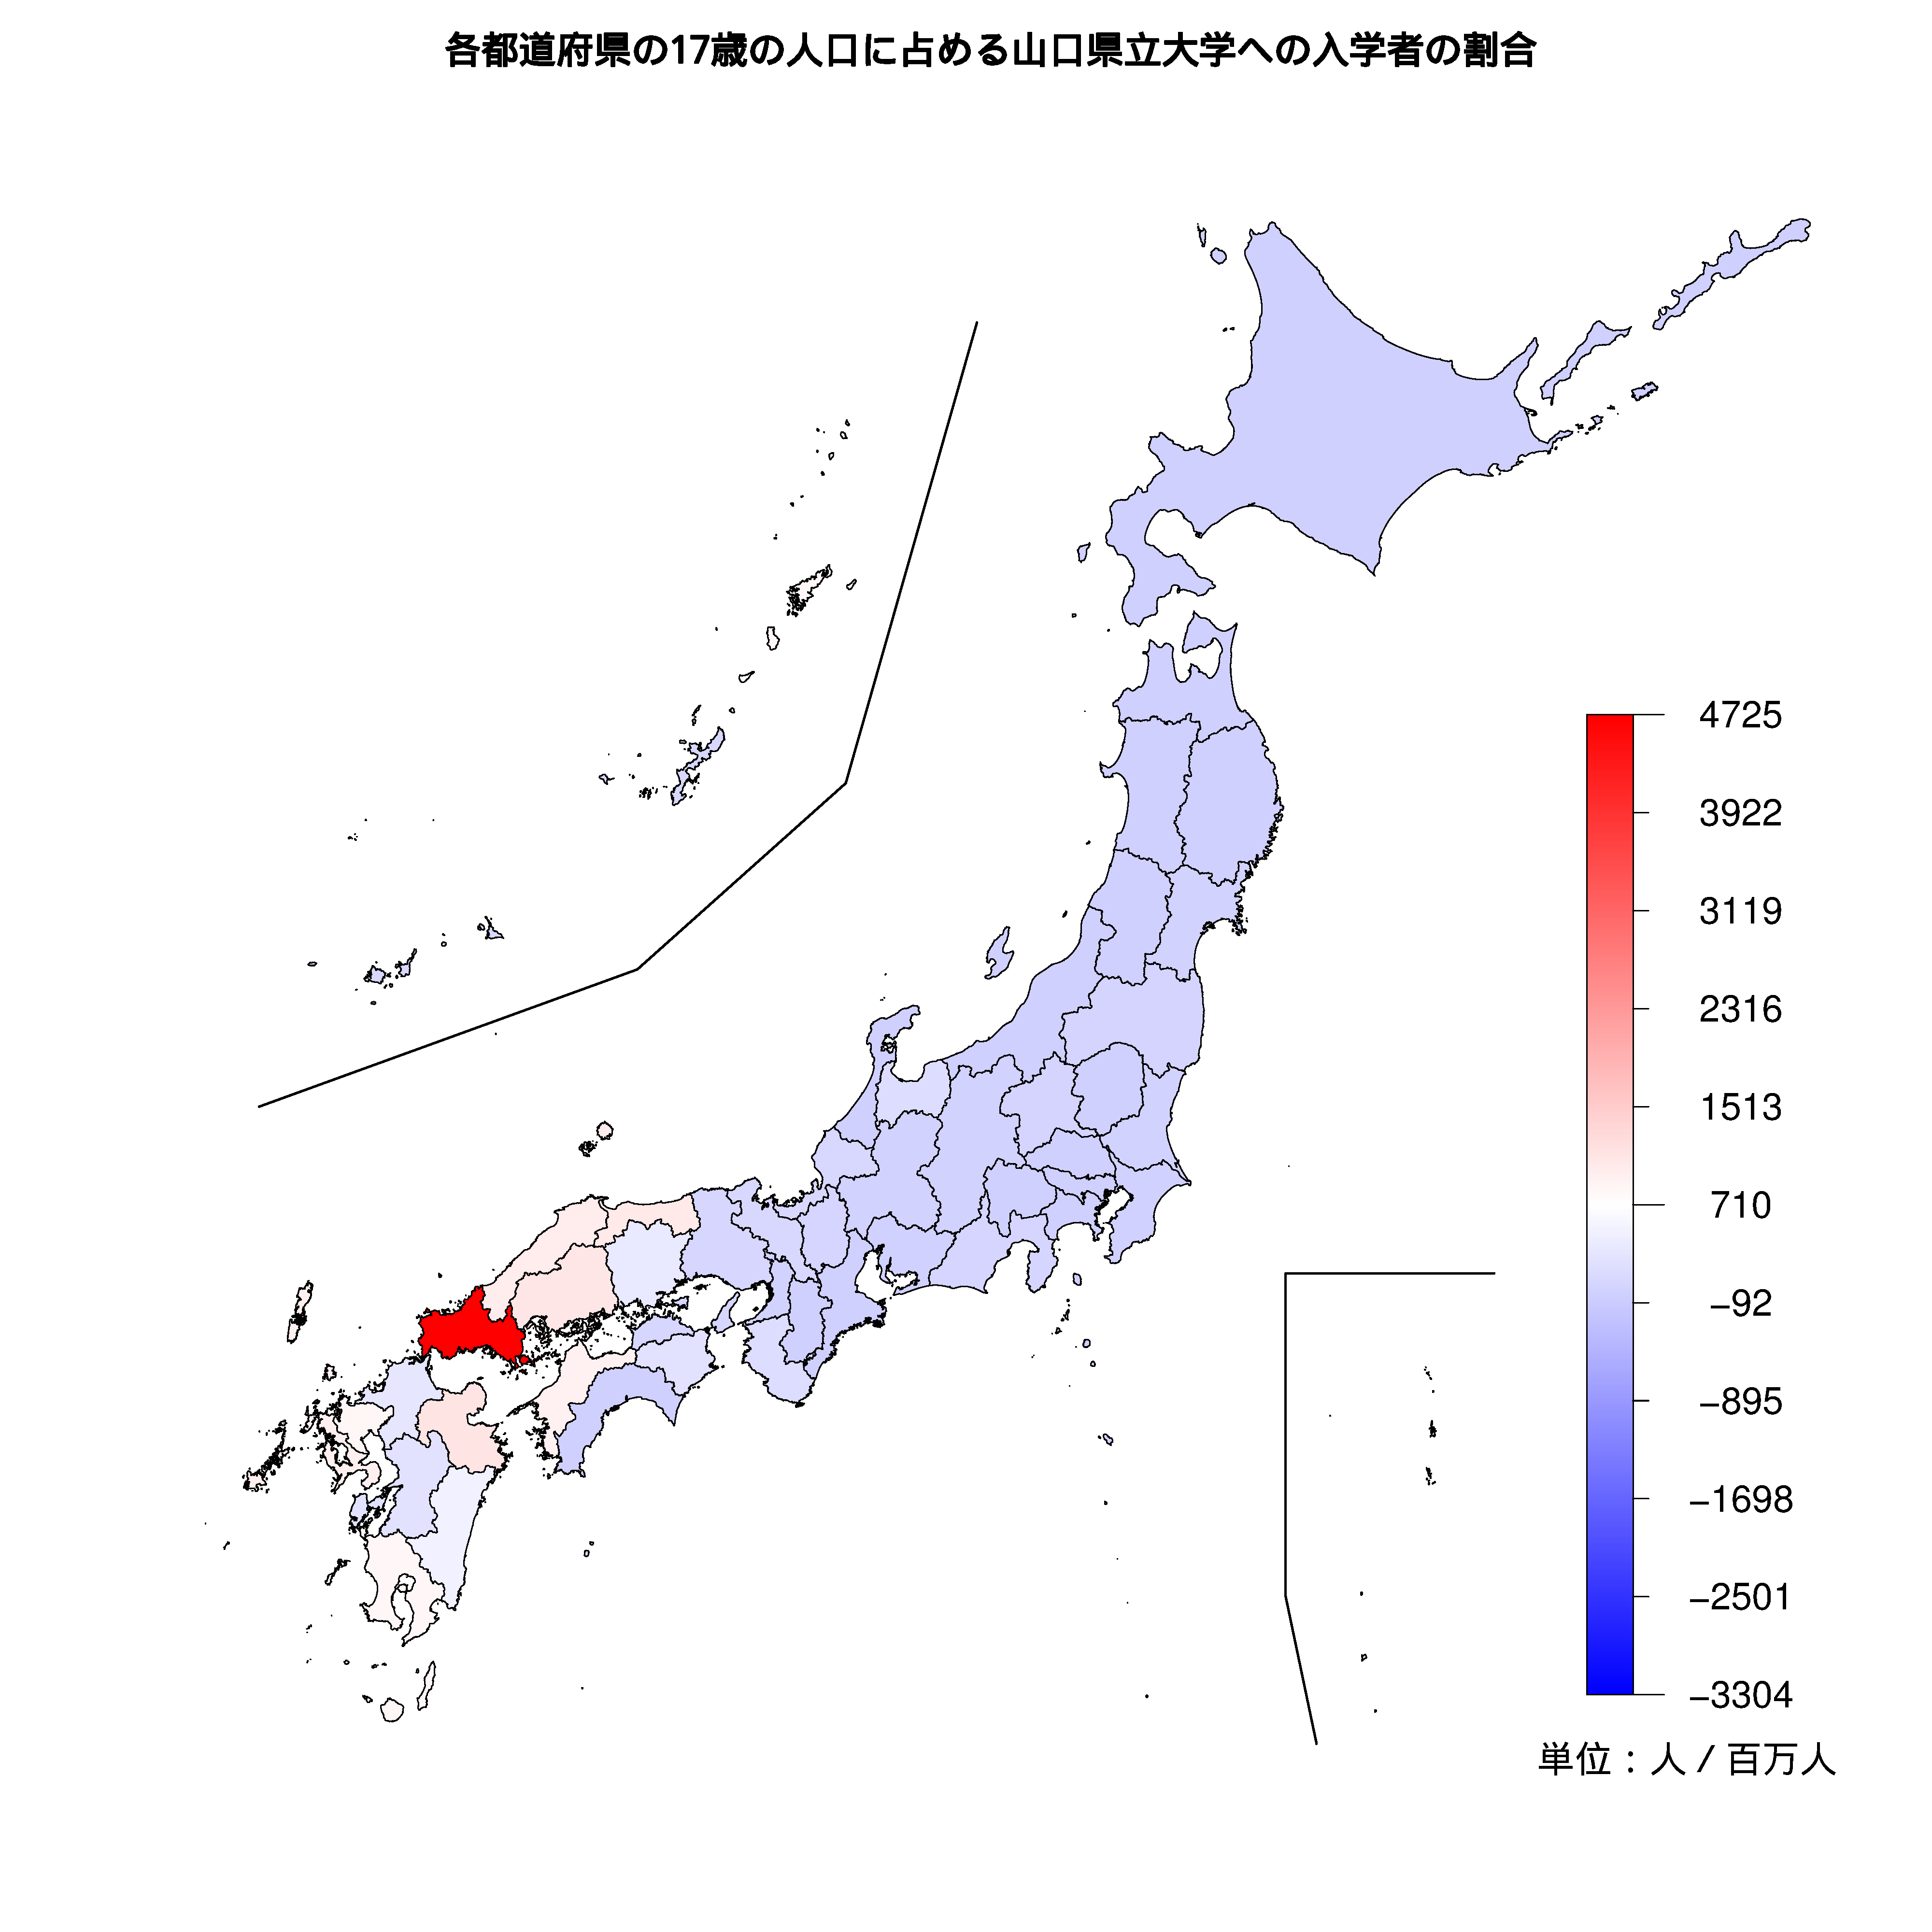 山口県立大学への入学者が多い都道府県の色分け地図